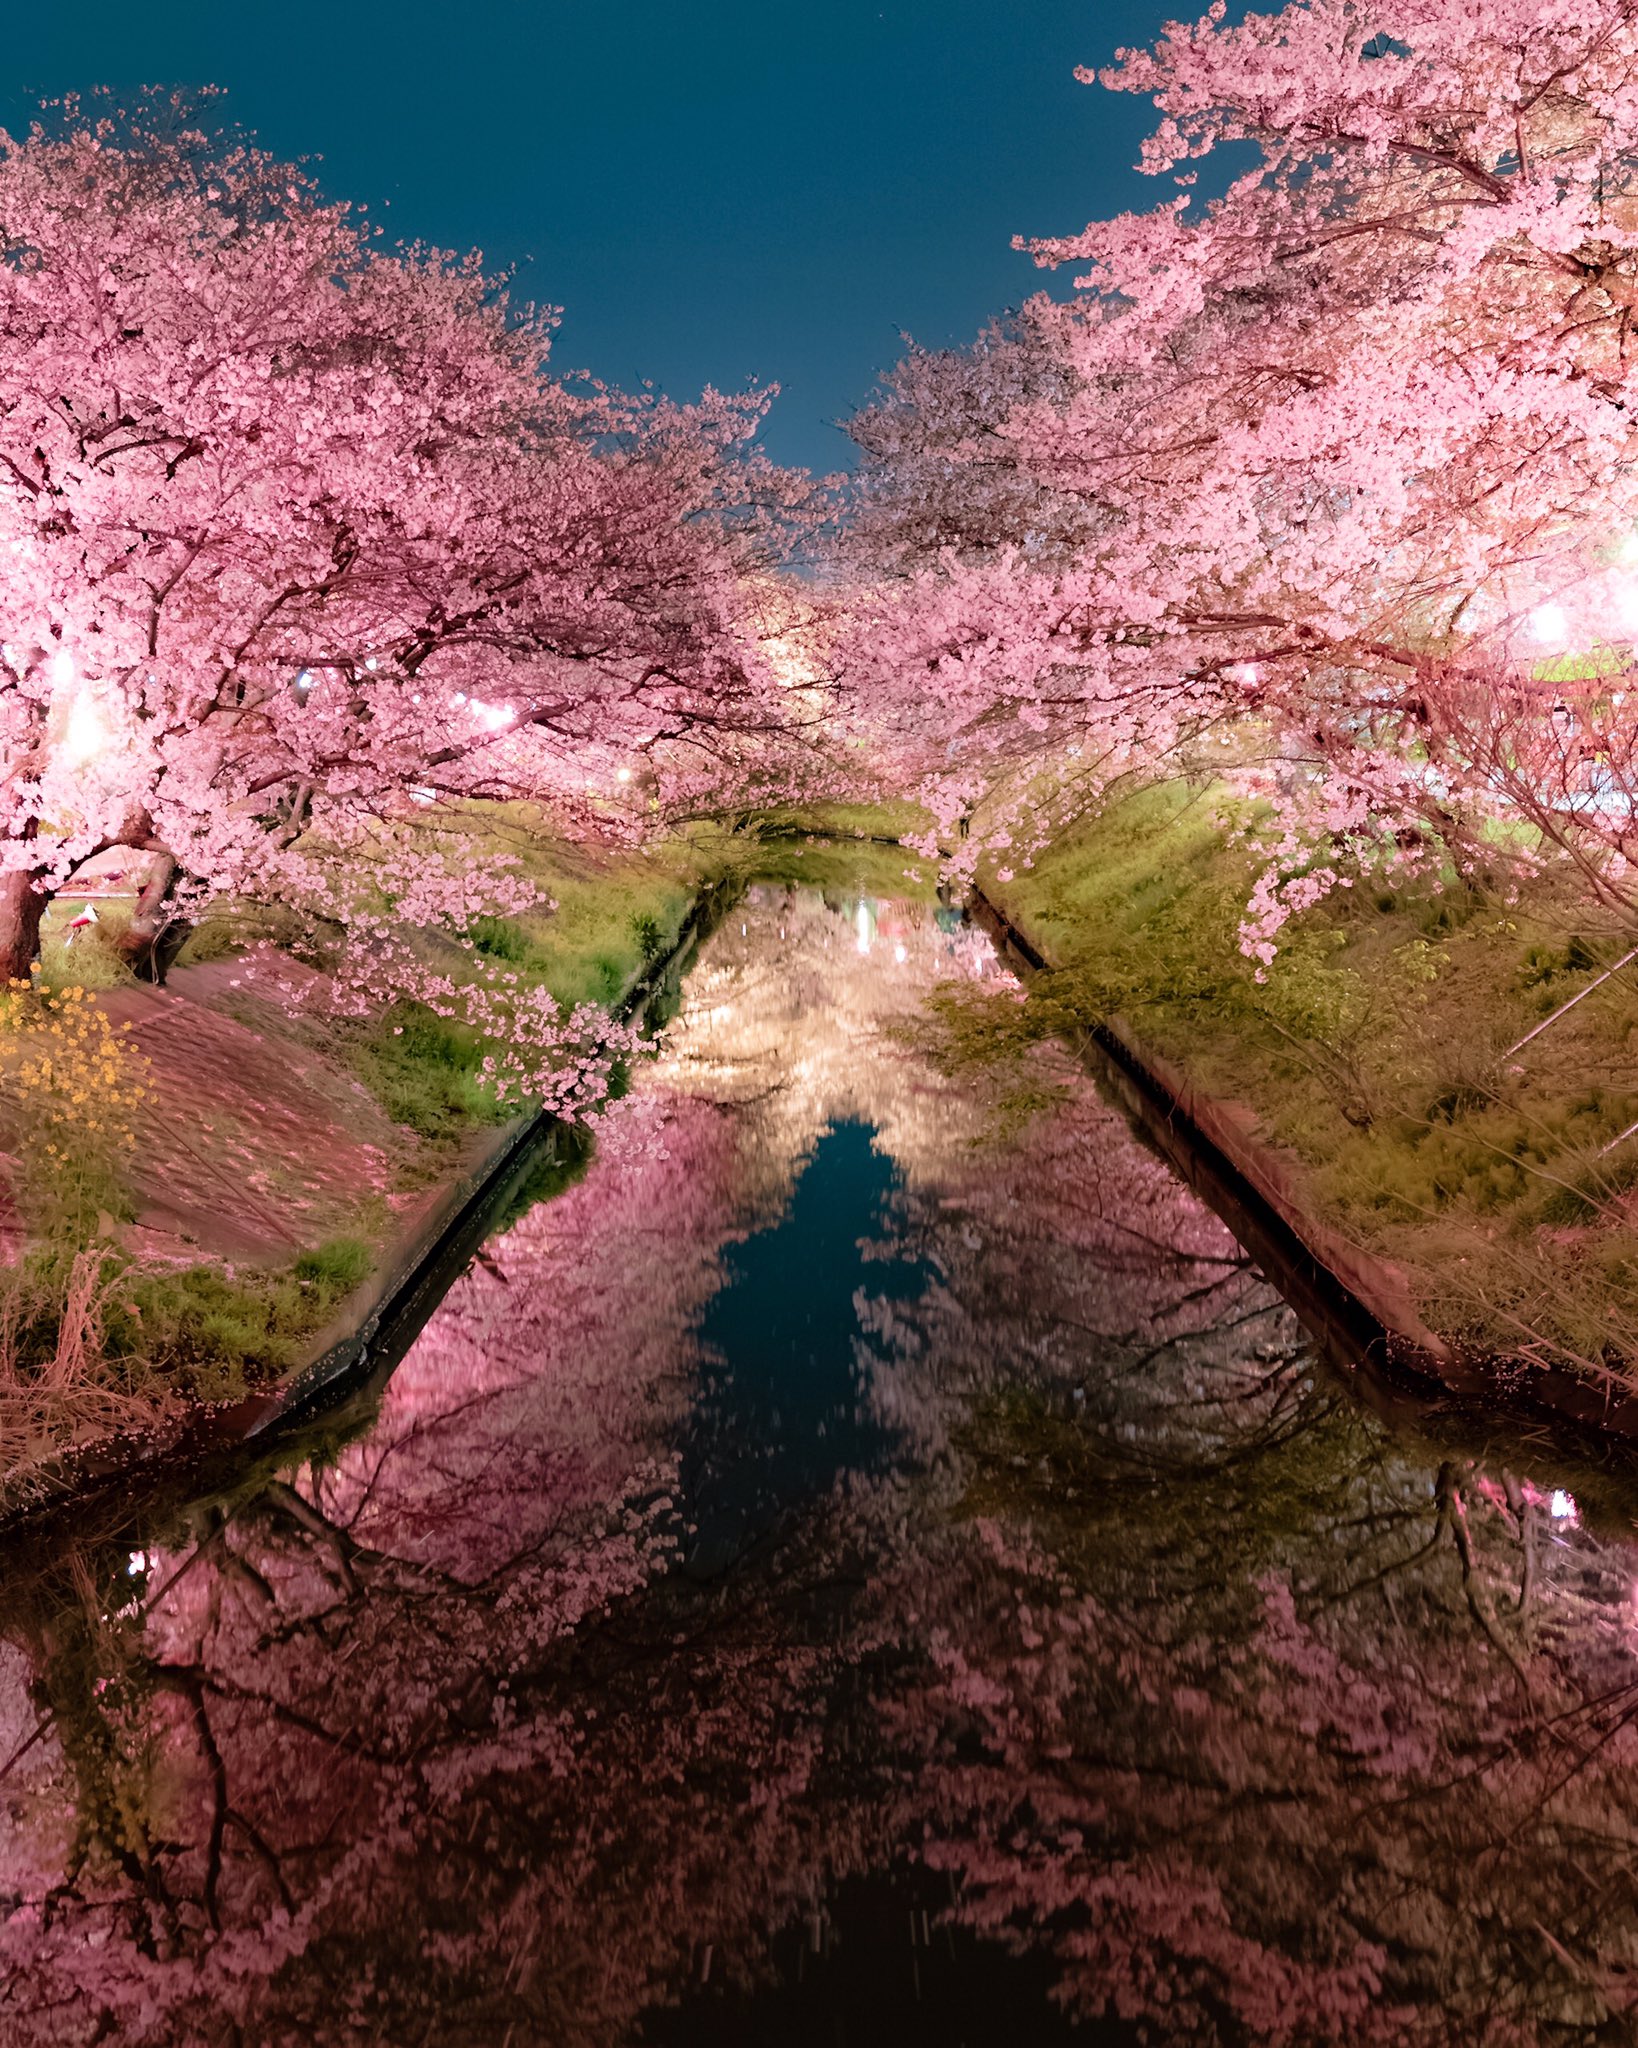 Ray 大学生 世界よ これが千葉の桜だ Japan 私を布教して 東京カメラ部 Tokyocameraclub Tokyo 一眼レフ Photograph Nikon ファインダー越しの私の世界 写真好きな人と繋がりたい 写真の奏でる私の世界 桜 千葉 Cherry Blossoms 夜桜 お